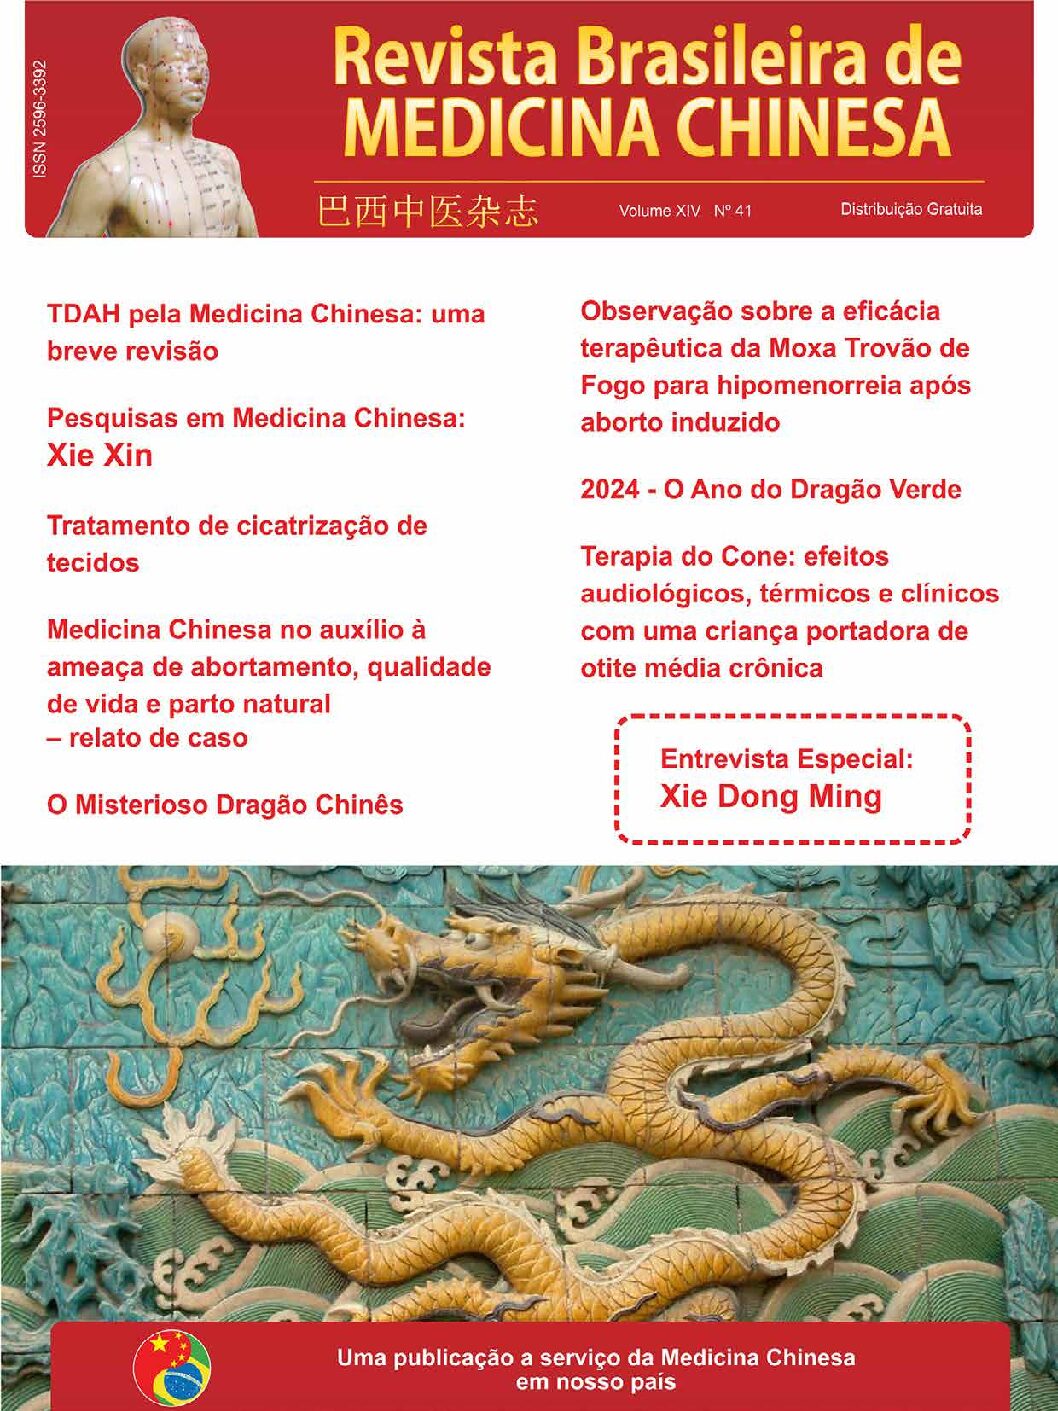 Revista Brasileira de Medicina Chinesa – 41ª Edição